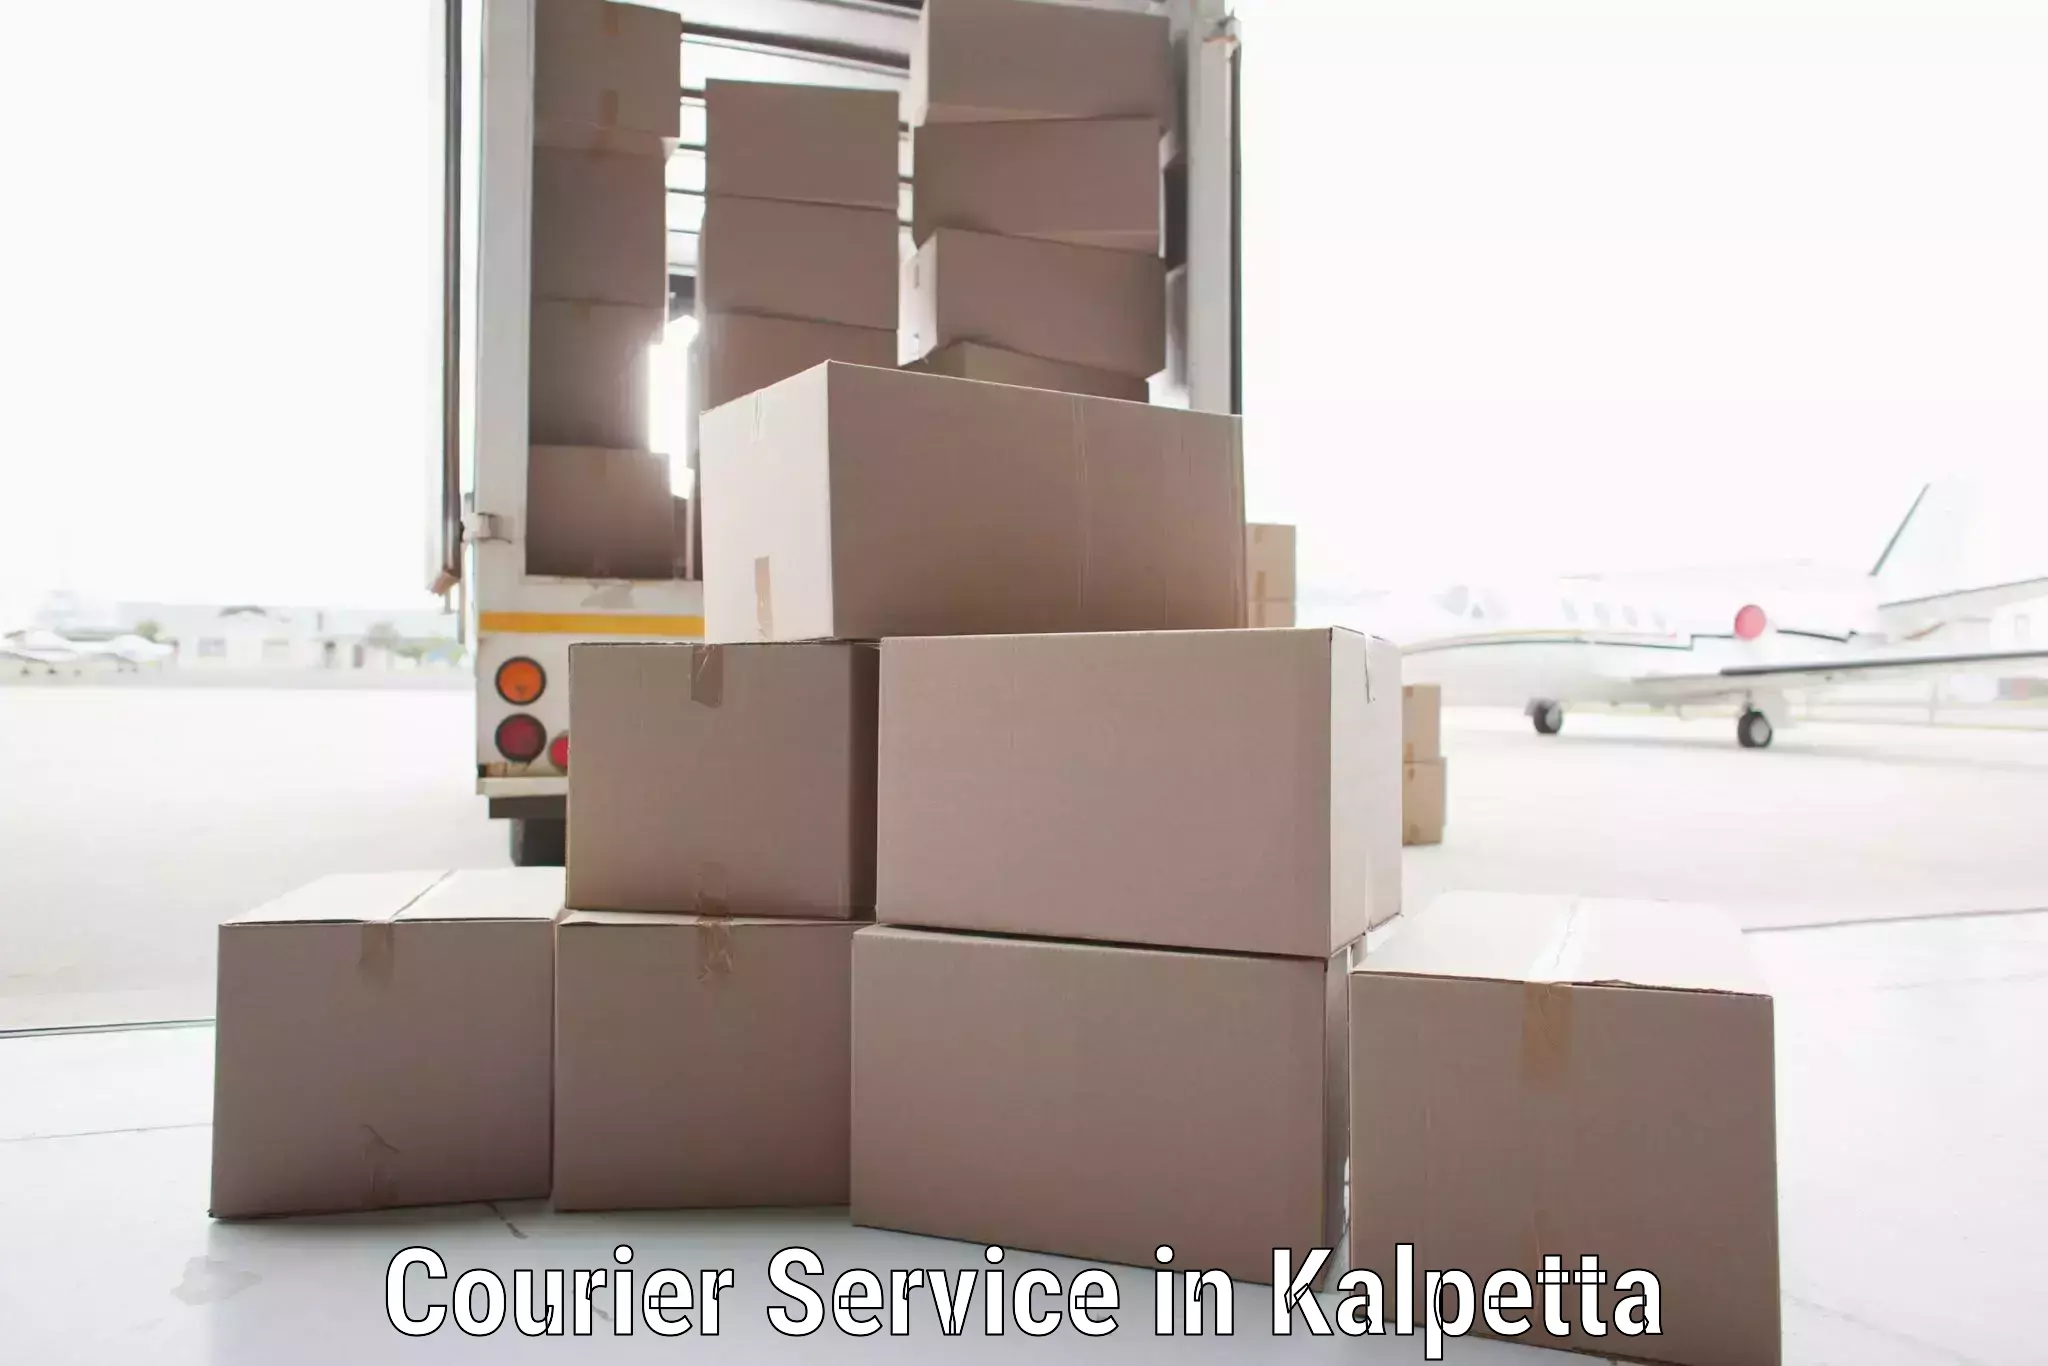 24-hour courier services in Kalpetta